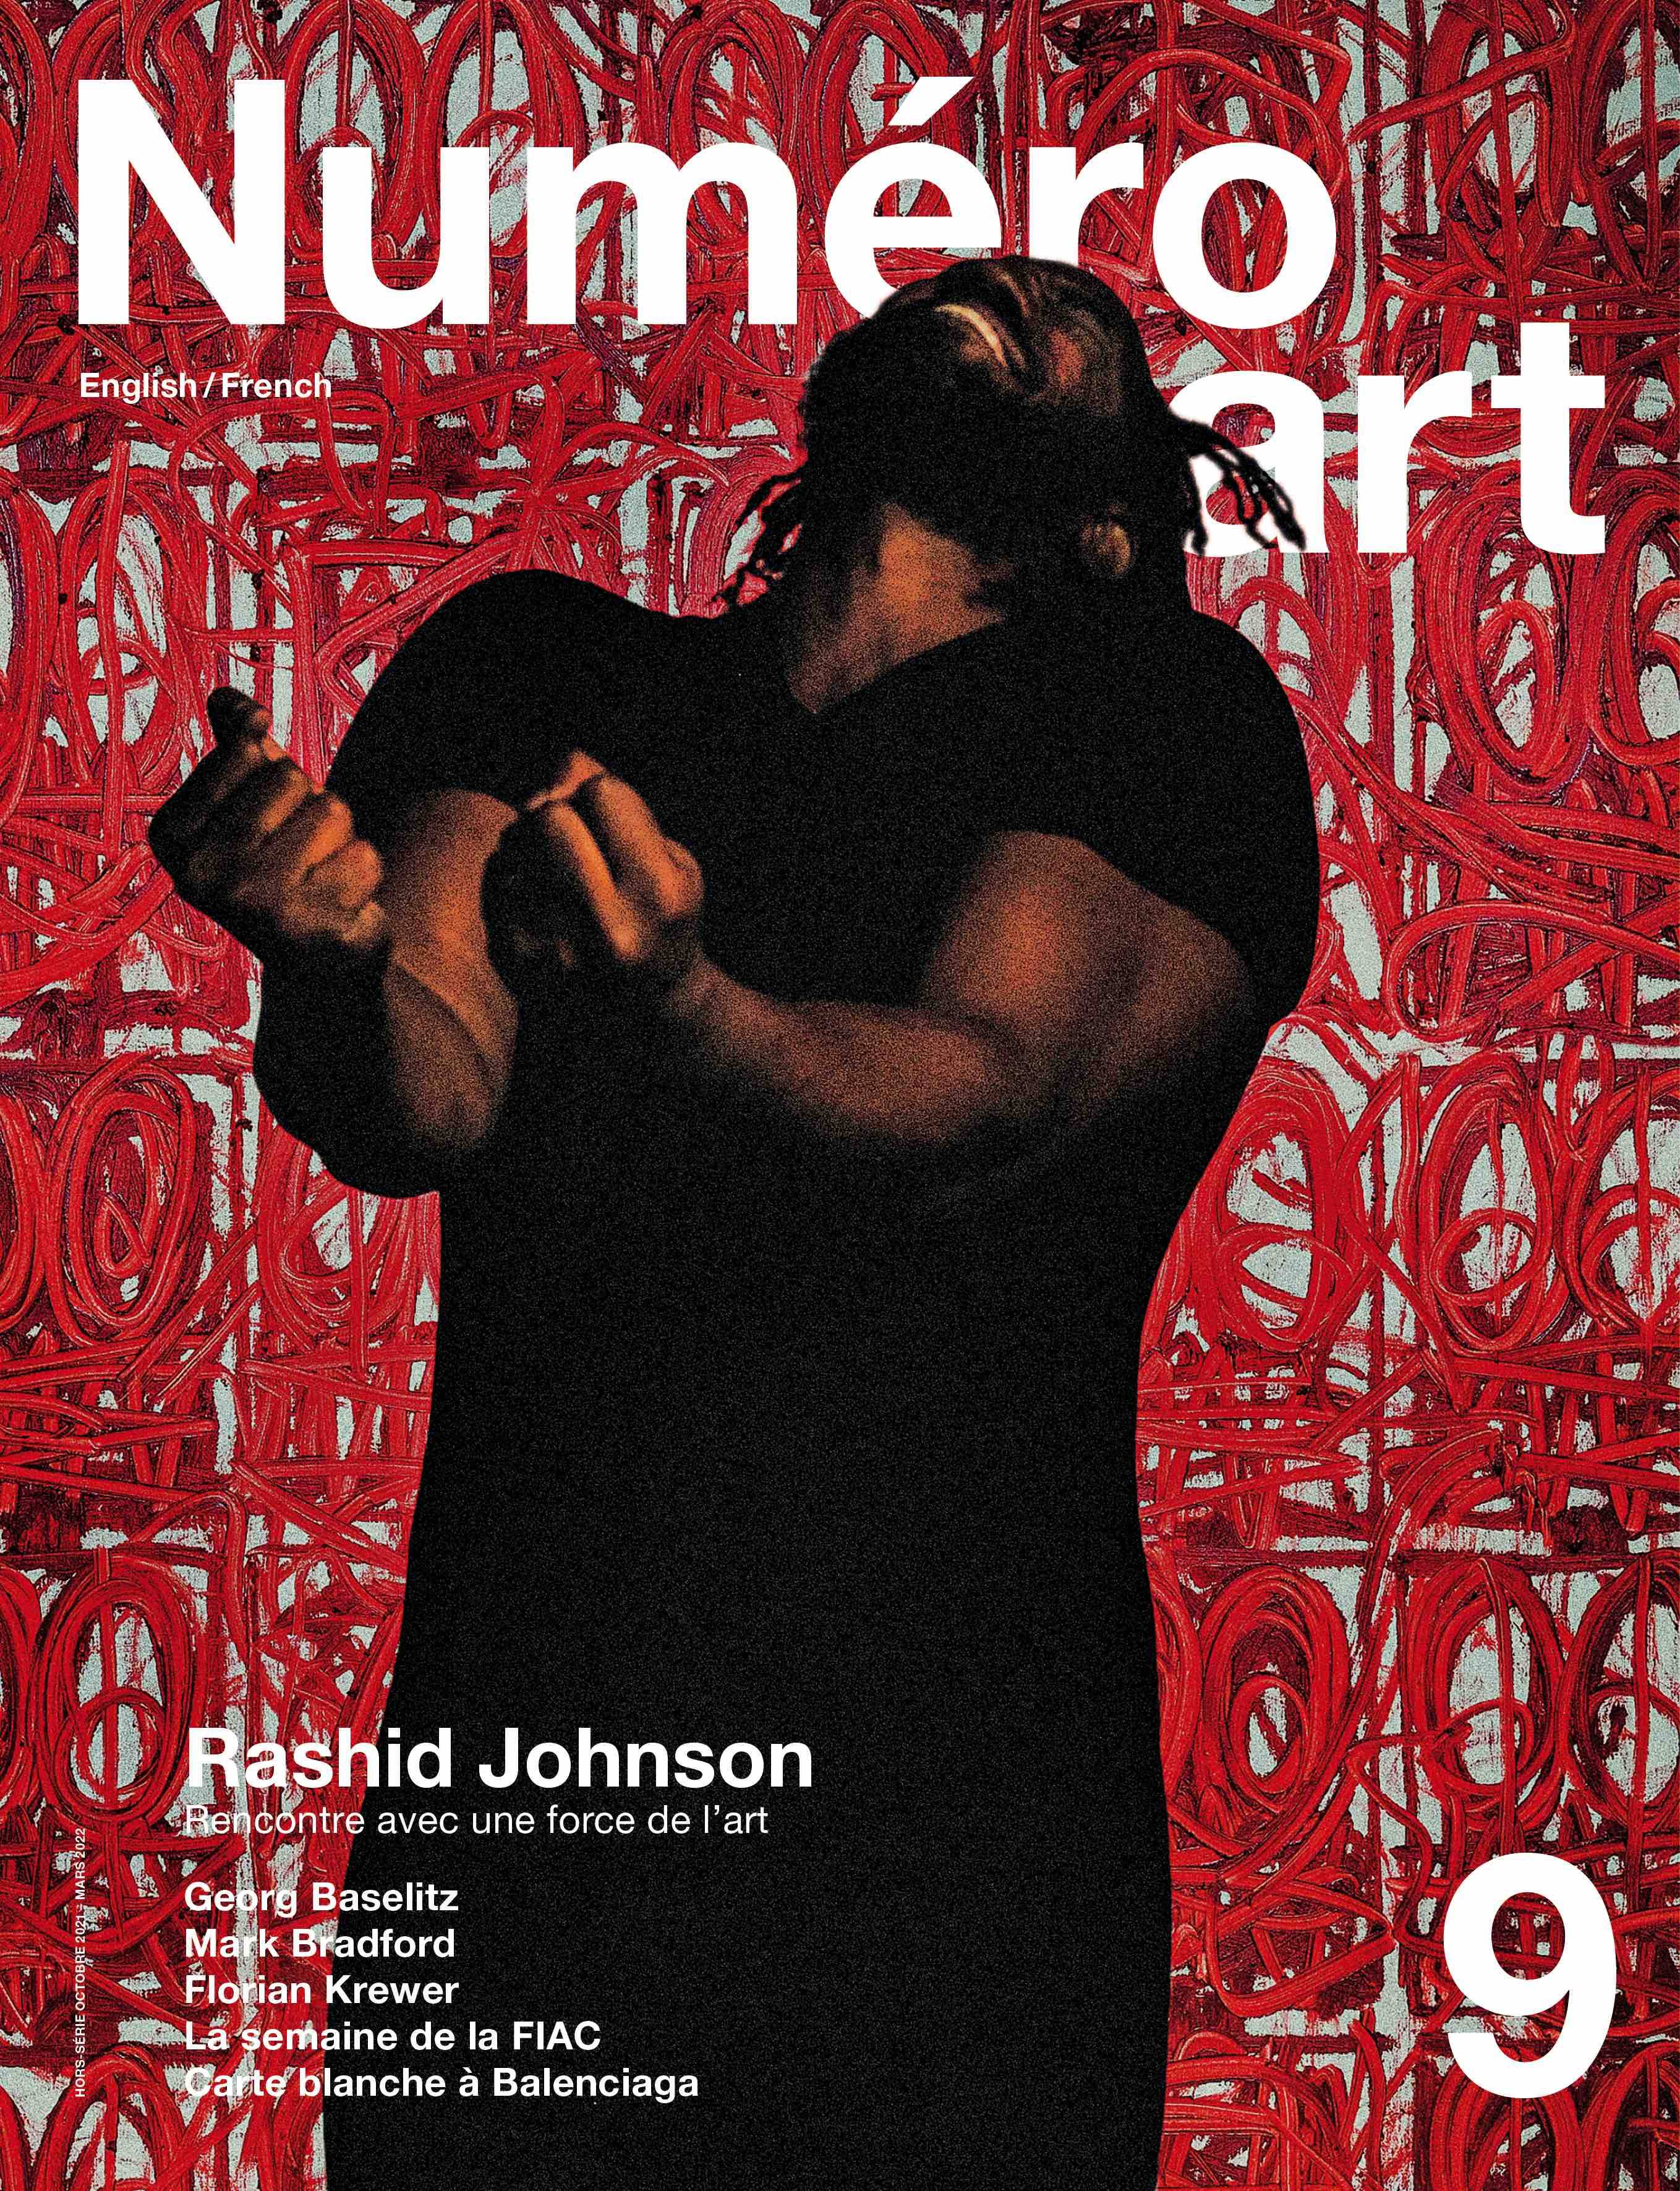 Rashid Johnson et Georg Baselitz en couverture de Numéro art 9